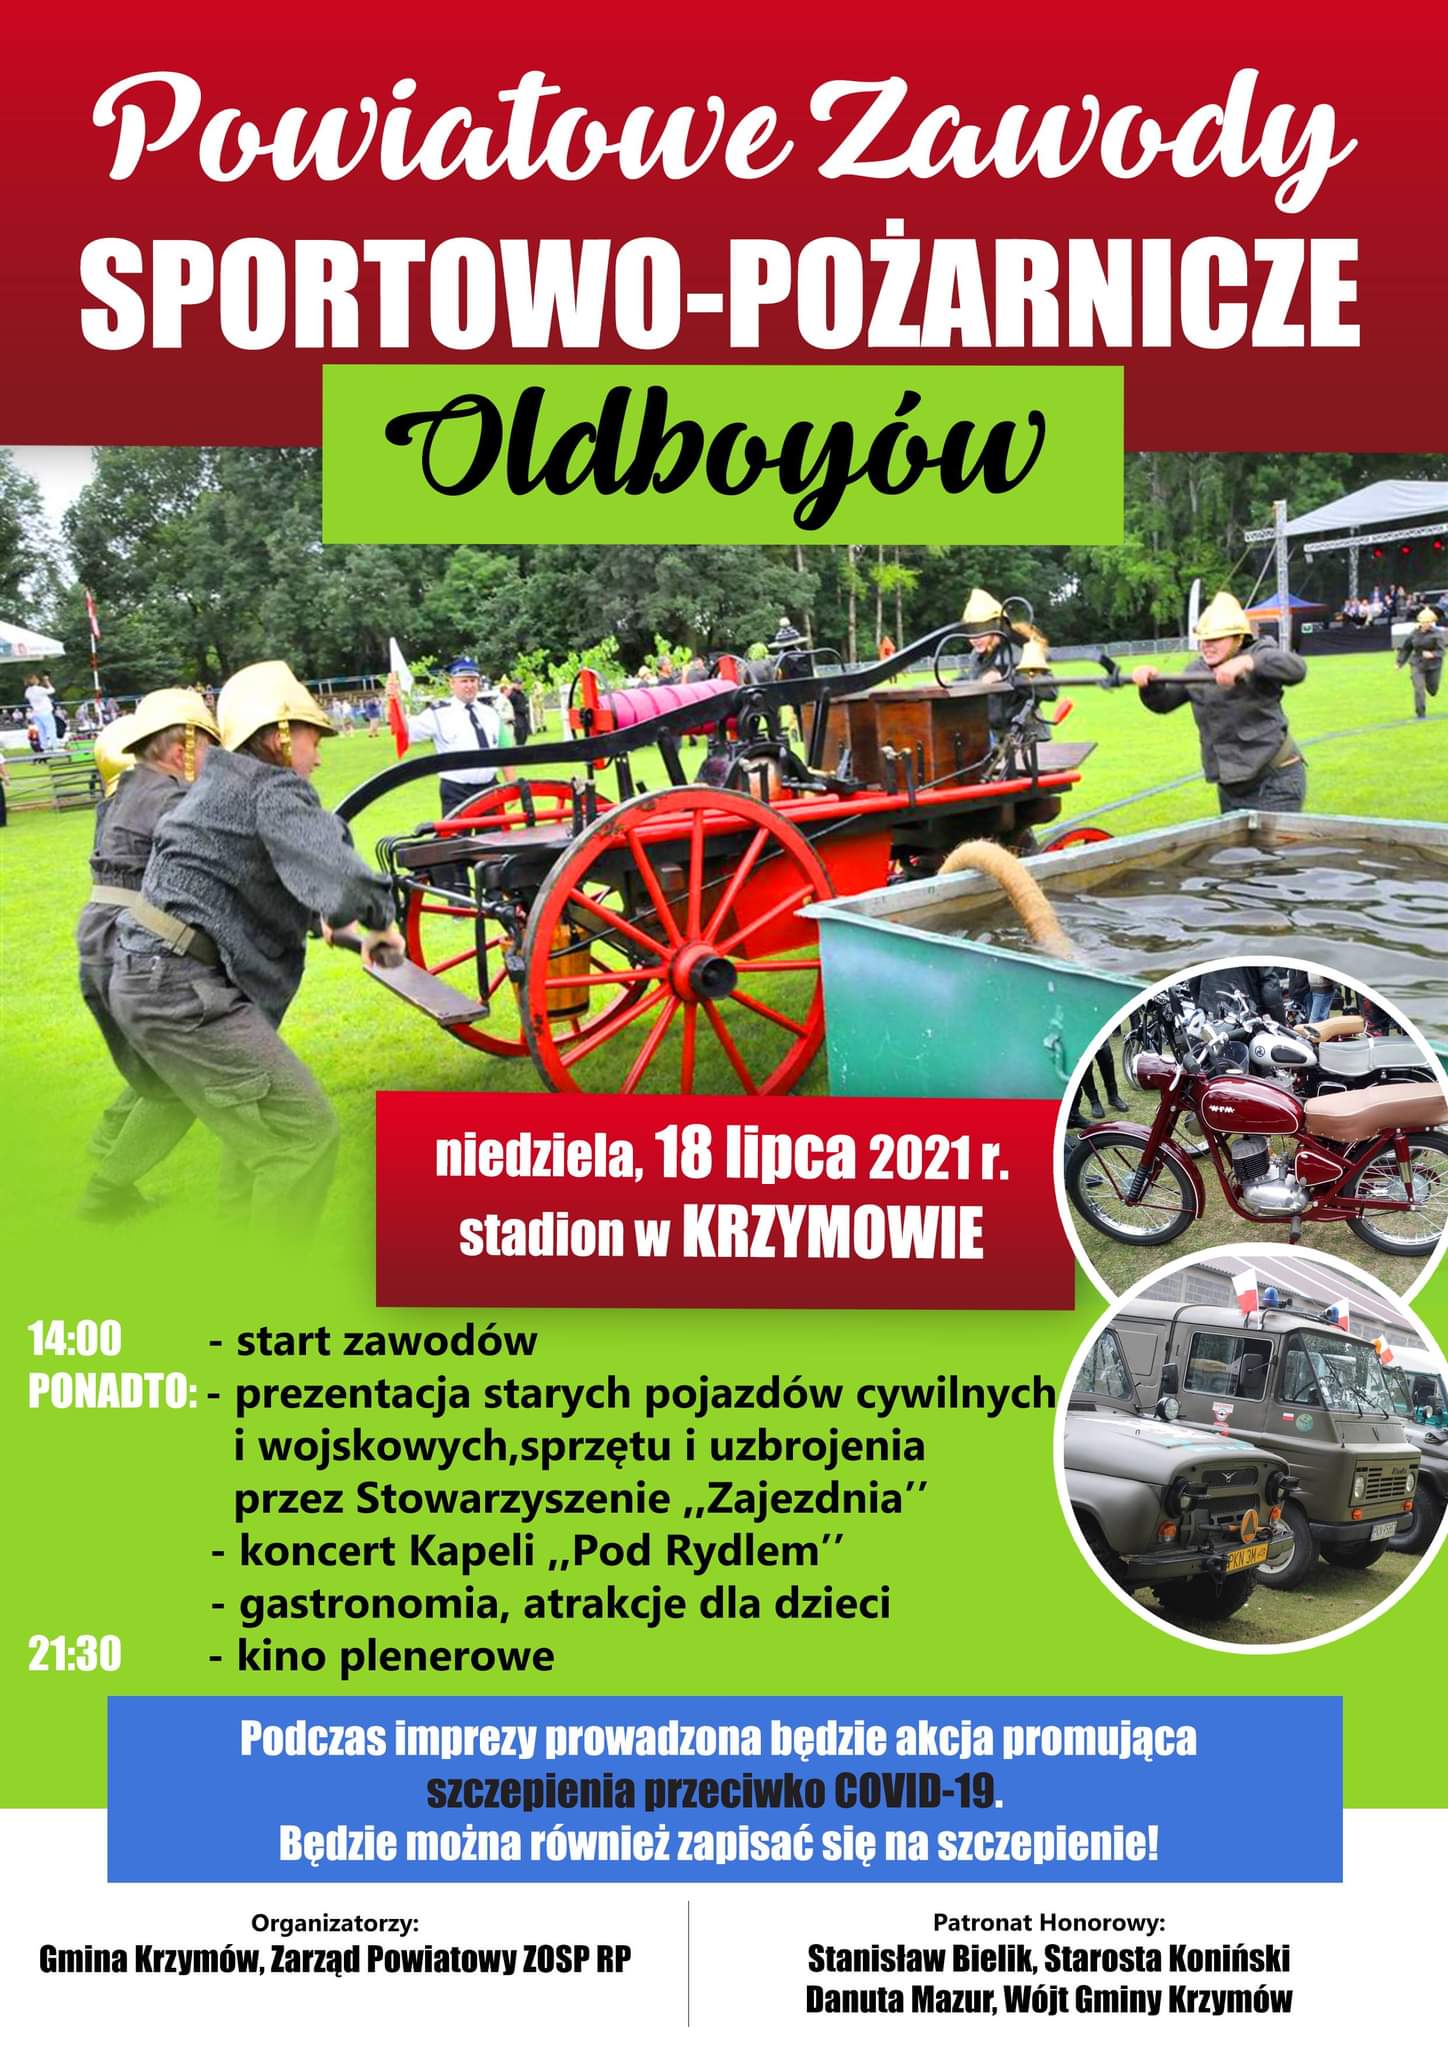 Plakat promujący Zawody Sportowo-Pożarnicze Oldboyów